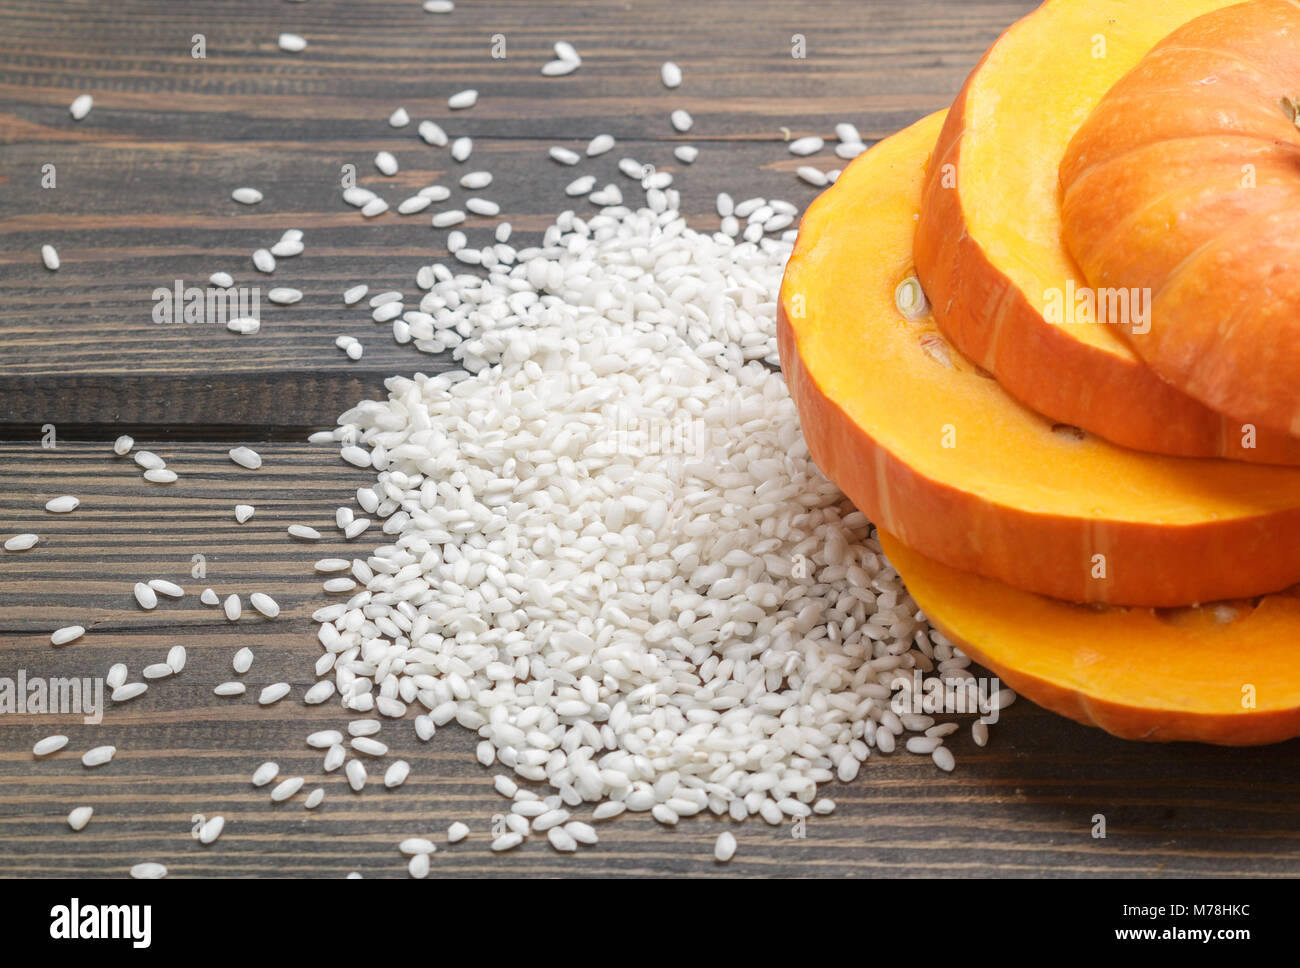 Pumpkin et du riz sur la table. Des ingrédients pour préparer des repas sains et délicieux. Focus sélectif. Copy space Banque D'Images